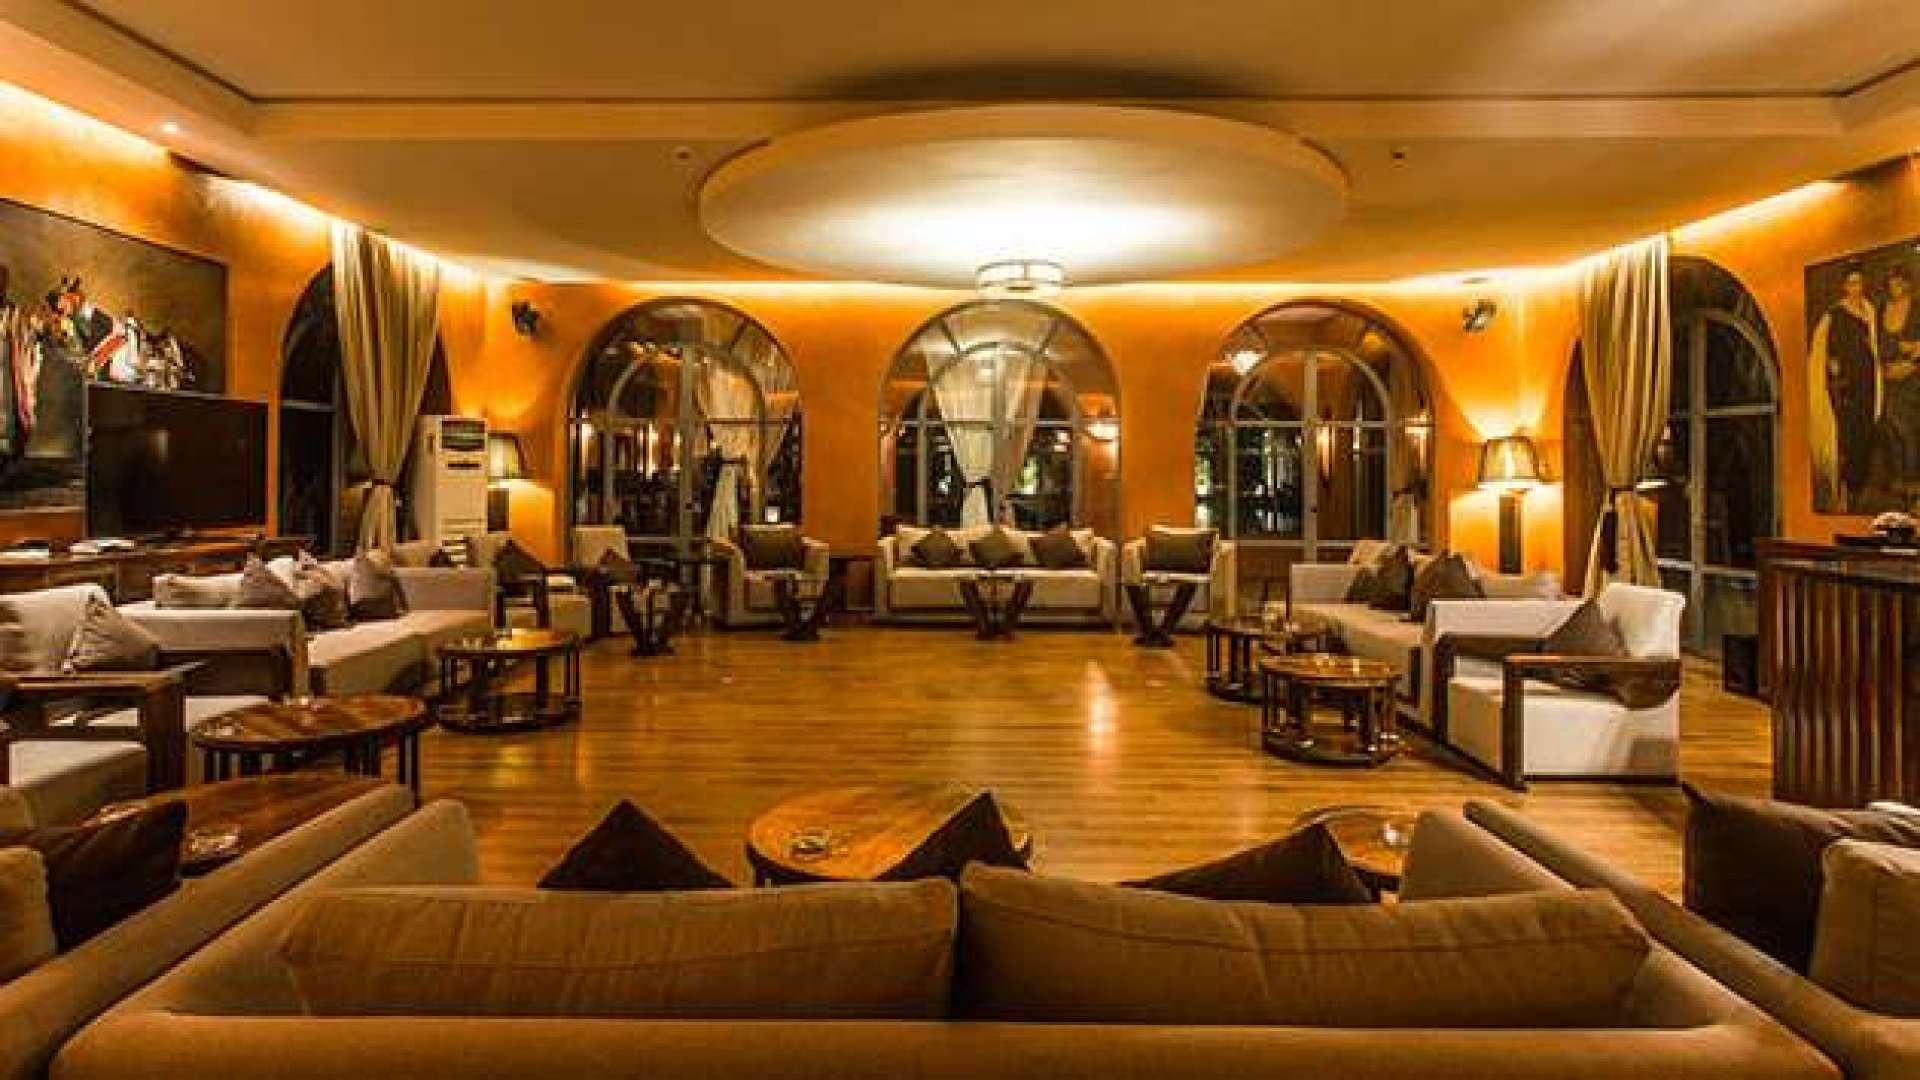 Location de vacances,Palais,Palais d'hôtes - 10 suites & 3 villas privées - Palmeraie Marrakech,Marrakech,Bab Atlas